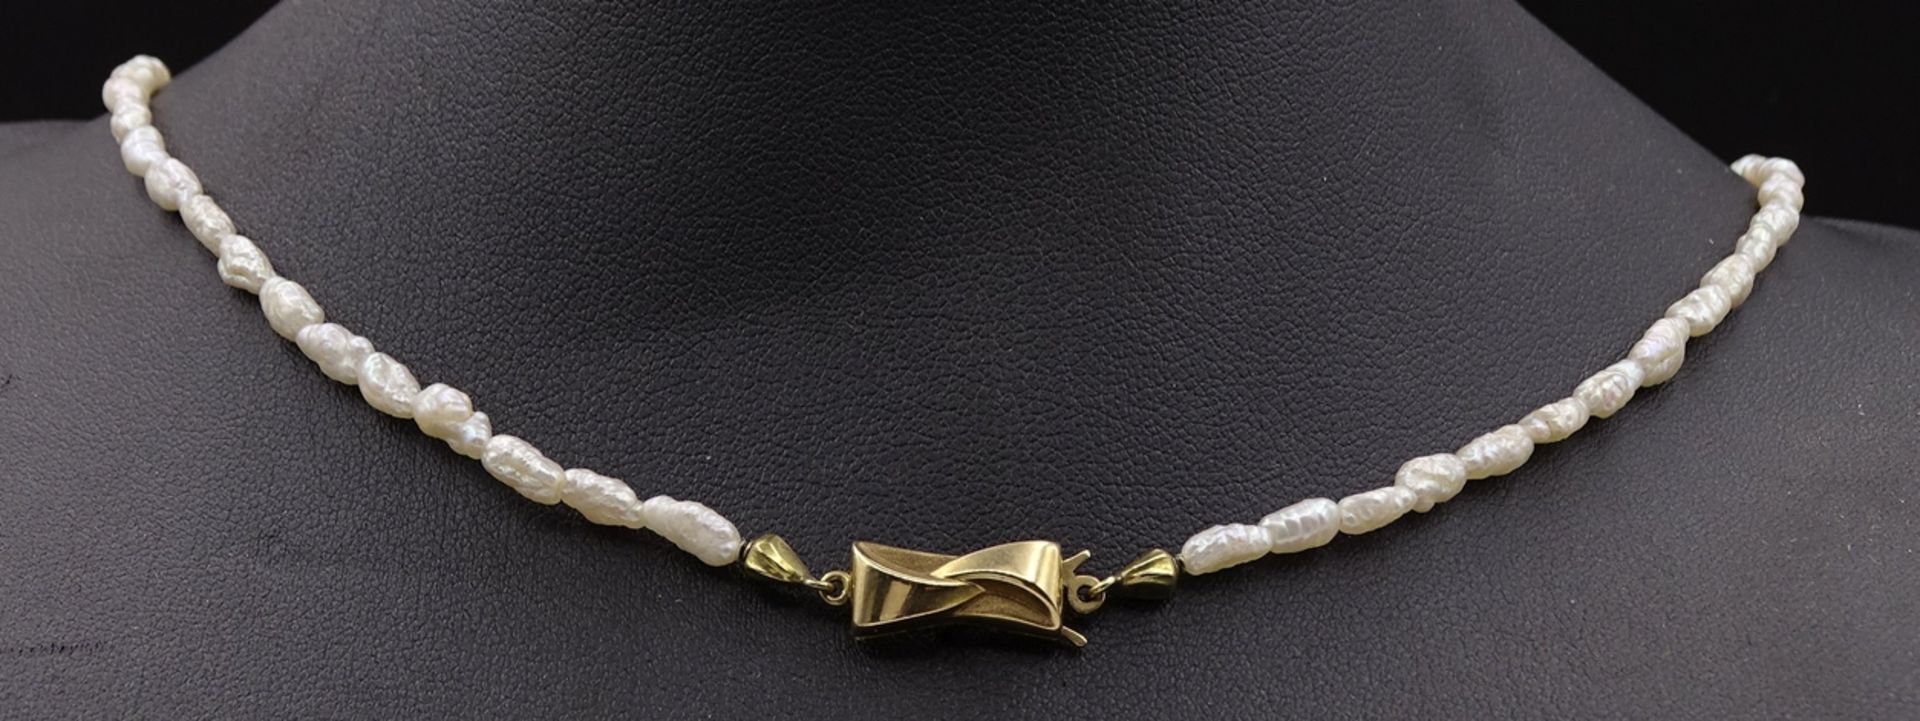 SW - Perlen Halskette mit Goldverschluss 375/000, L. 41cm